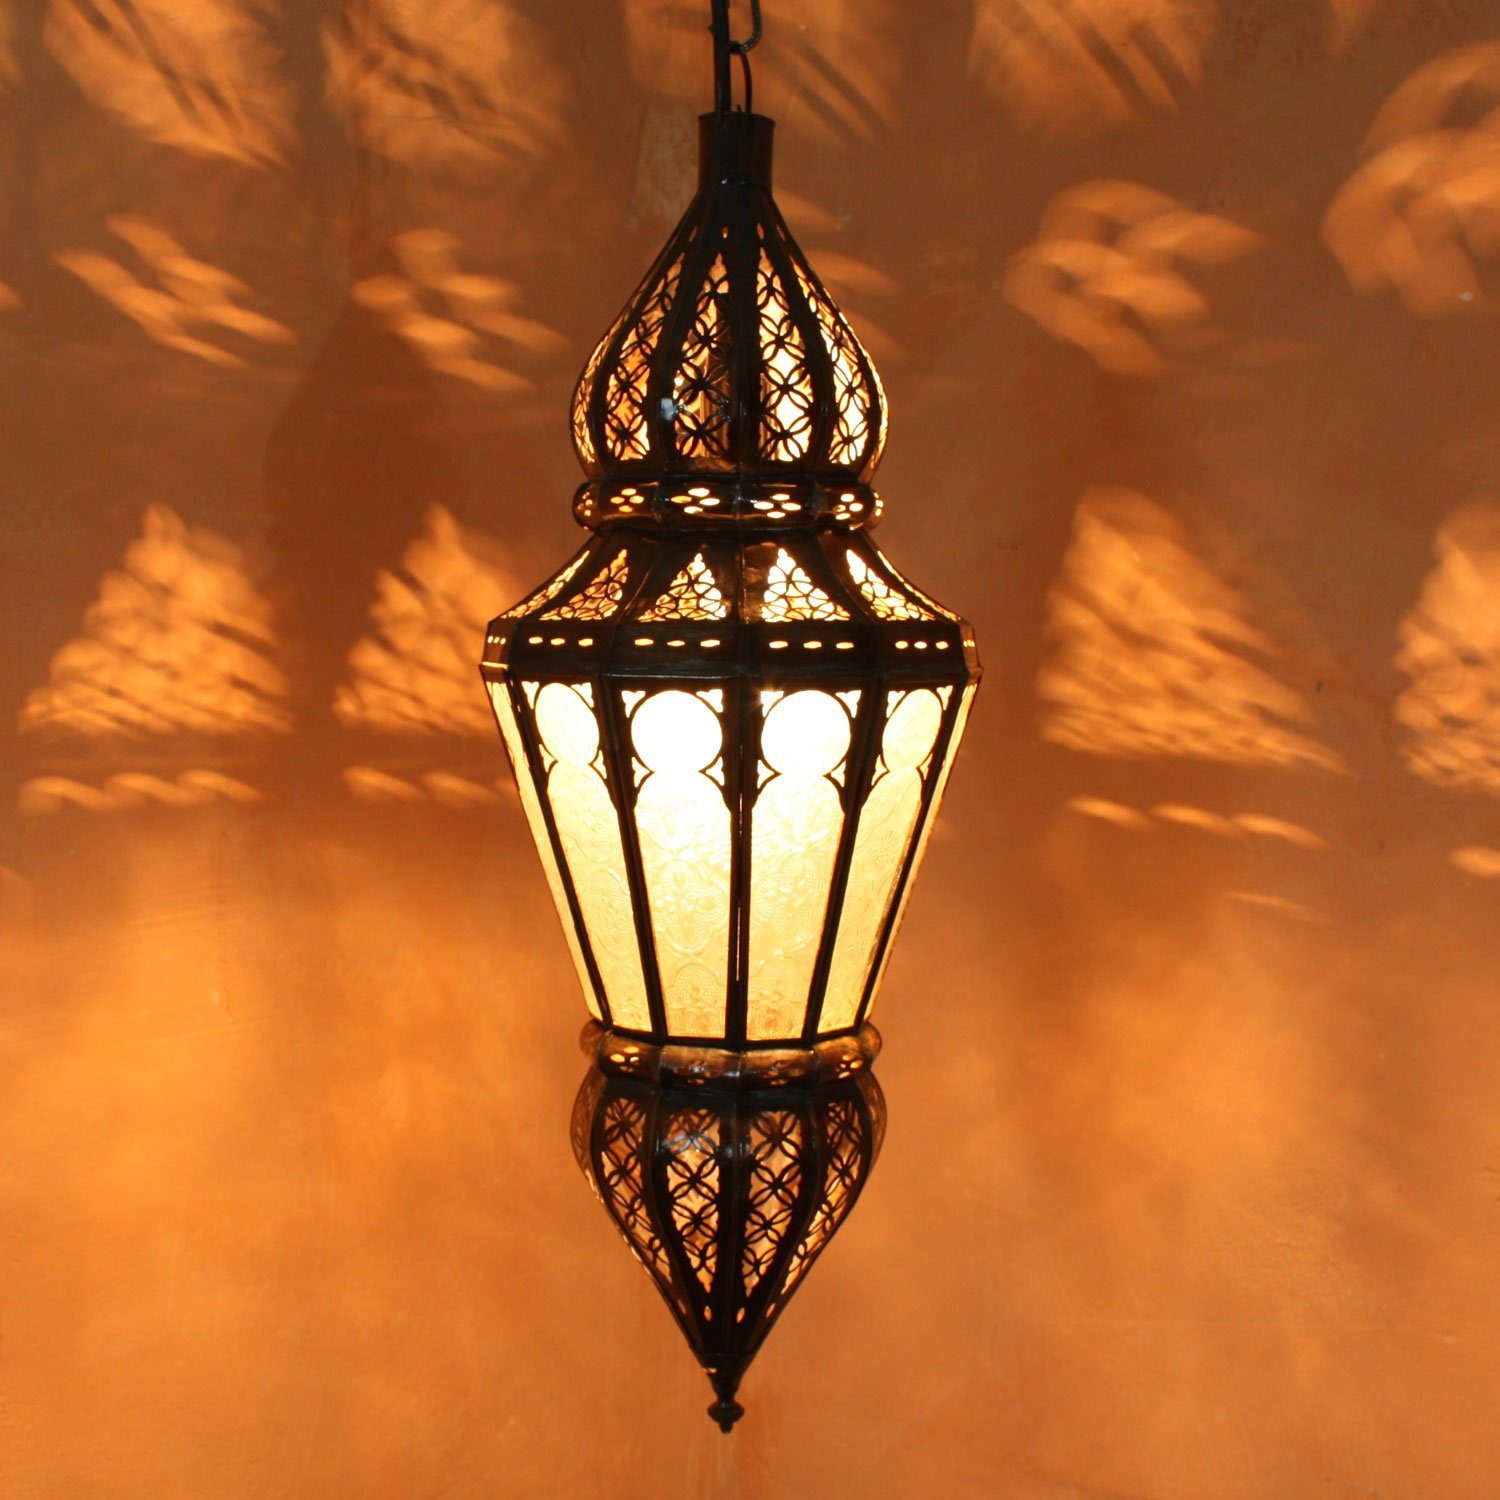 Casa Moro Deckenleuchte Orientalische Lampe marokkanische Hängelampe Nura Weiß Höhe 54 cm, aus Glas und Metall, ohne Leuchtmittel, Neutralweiß, Kunsthandwerk aus Marokko, K1215